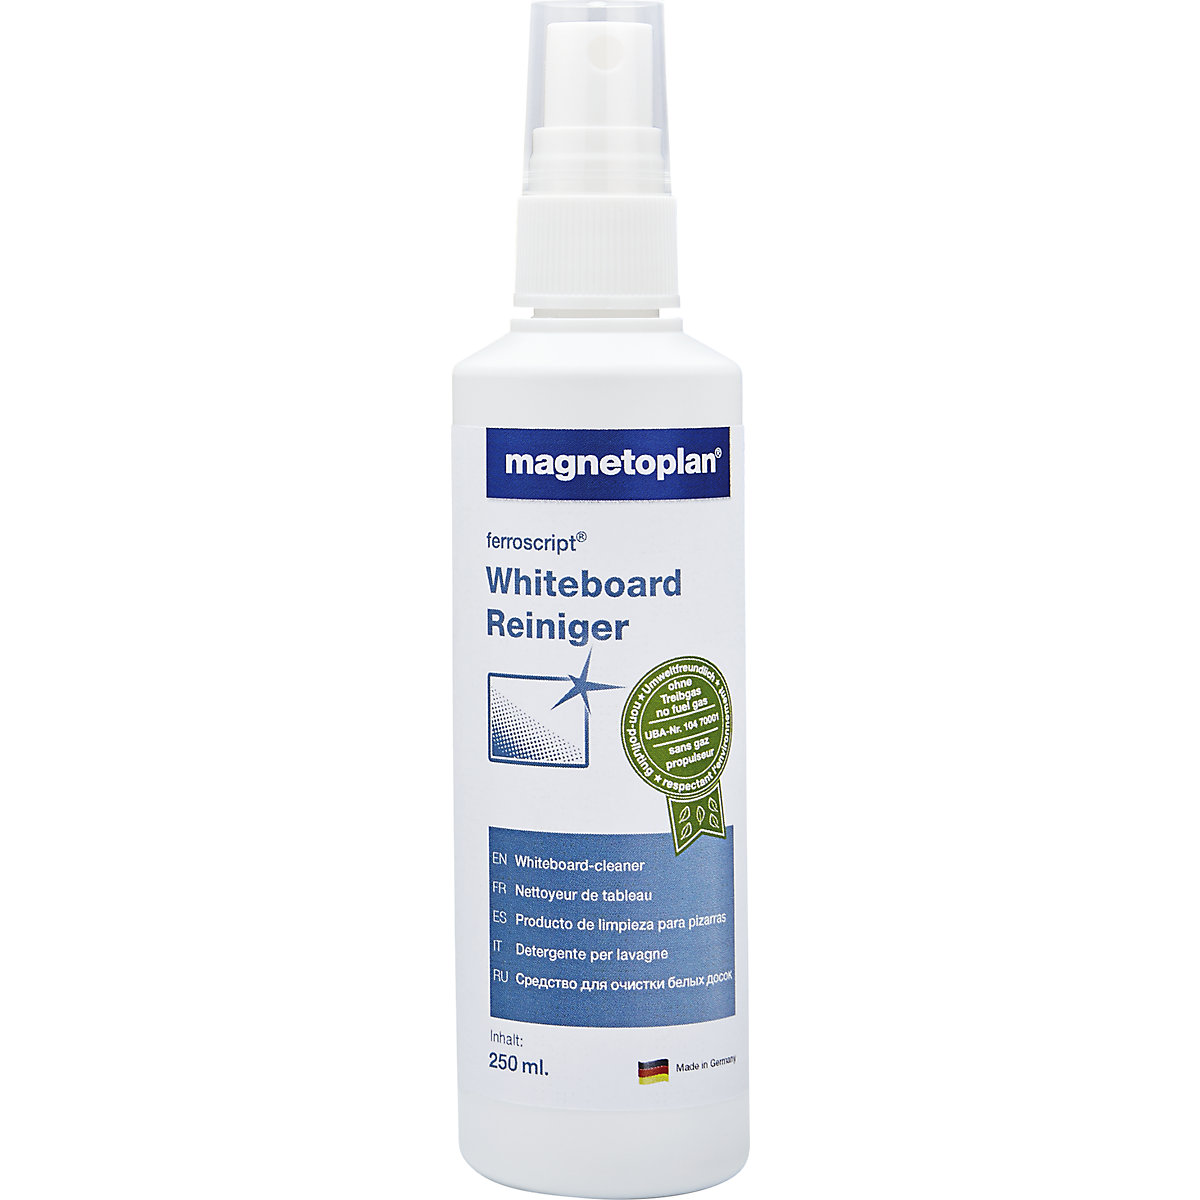 ferroscript®-whiteboard-reiniger – magnetoplan